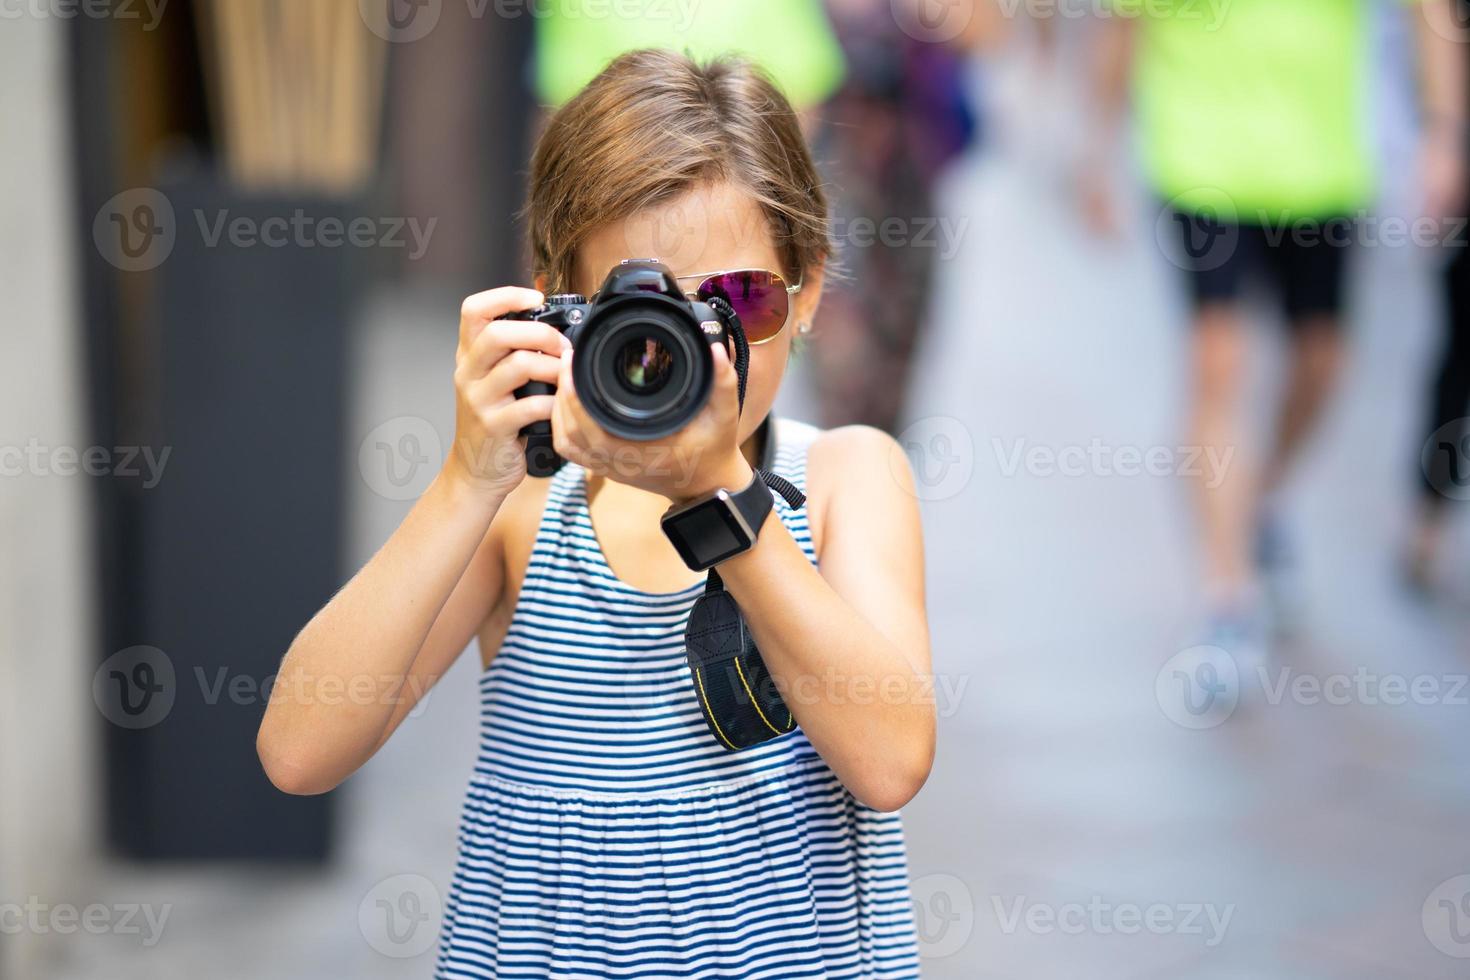 bambina che fa foto con la fotocamera reflex digitale sulla strada della città